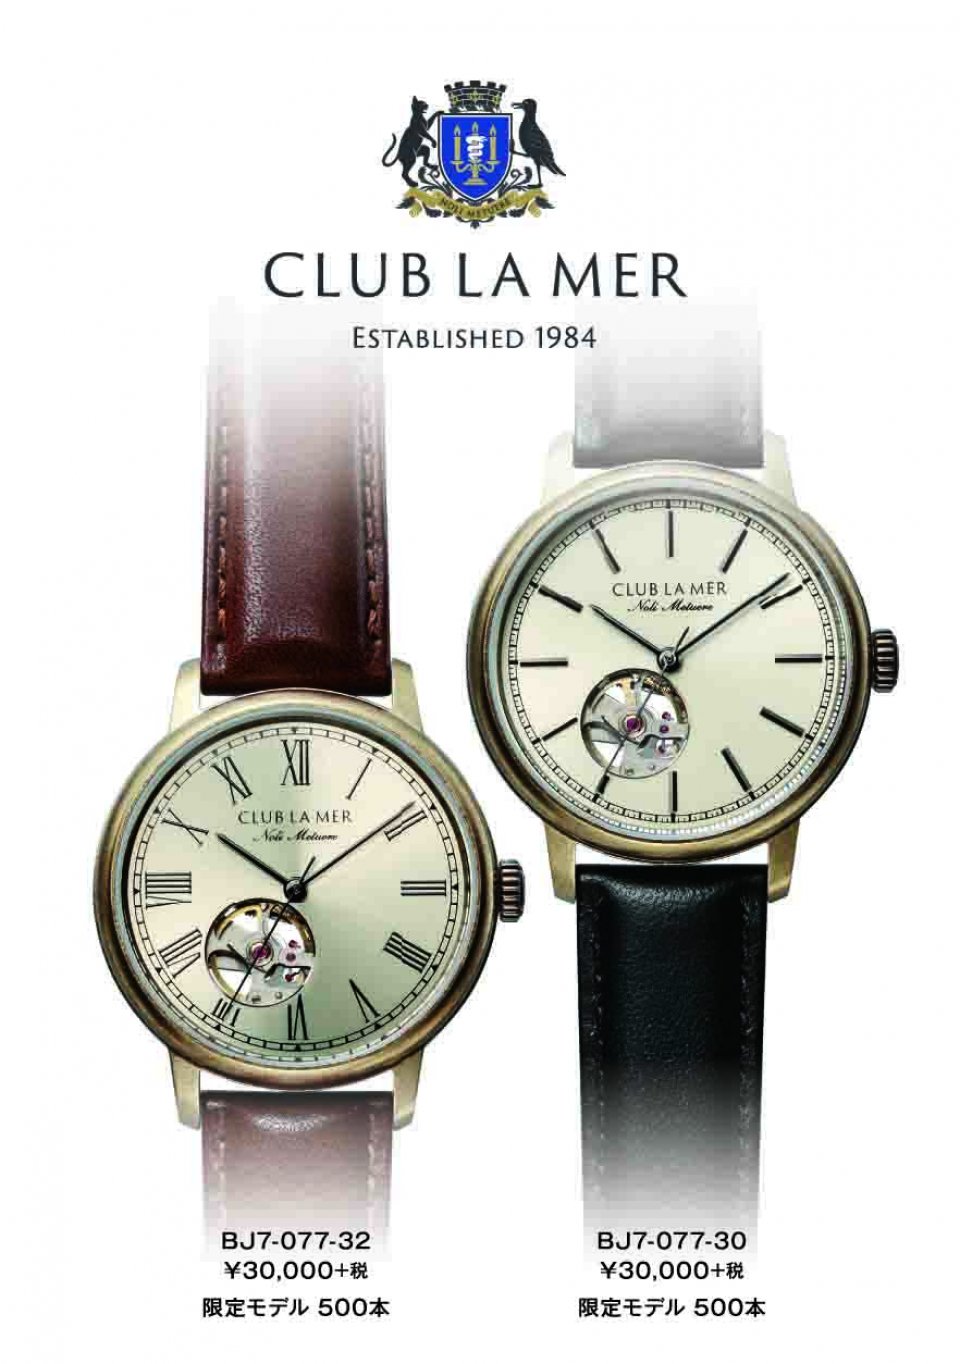 シチズン、手の届く機械式時計「クラブ・ラ・メール」から35周年記念